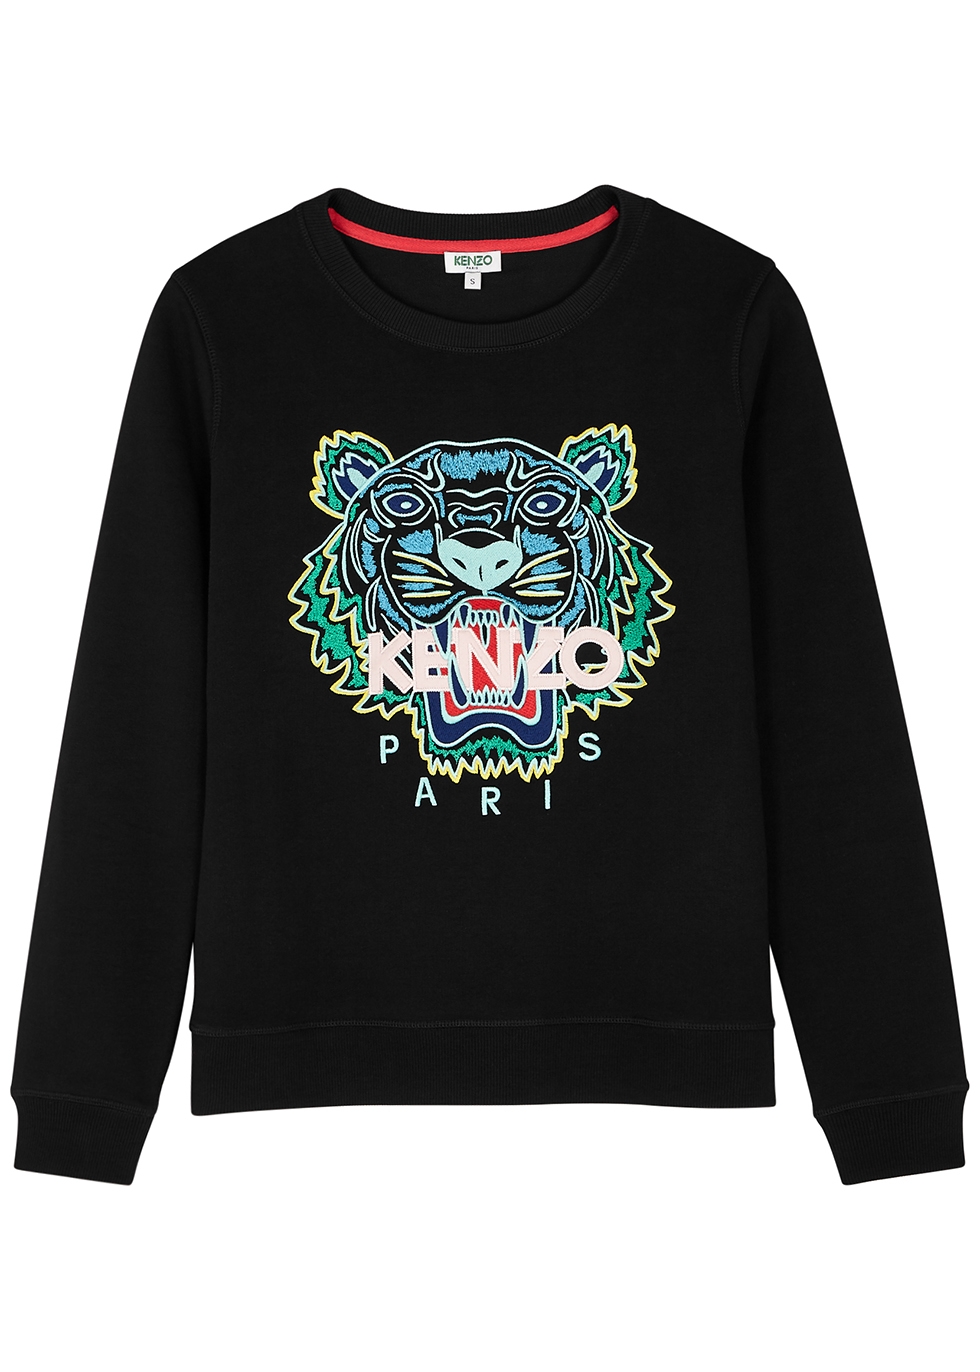 kenzo sweater